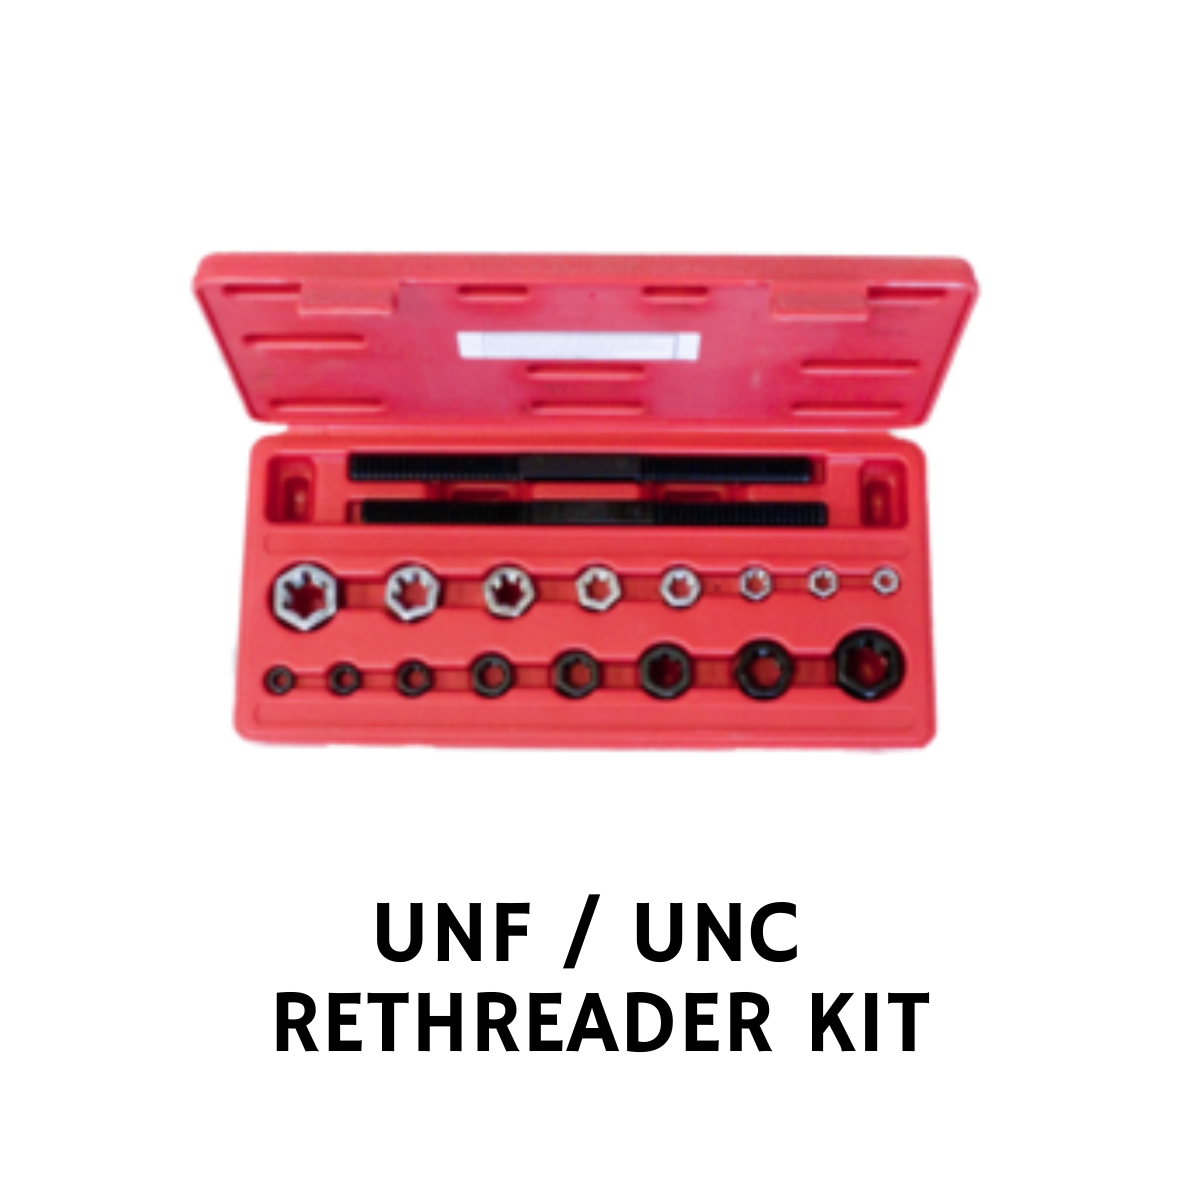 UNF / UNC RETHREADER KIT